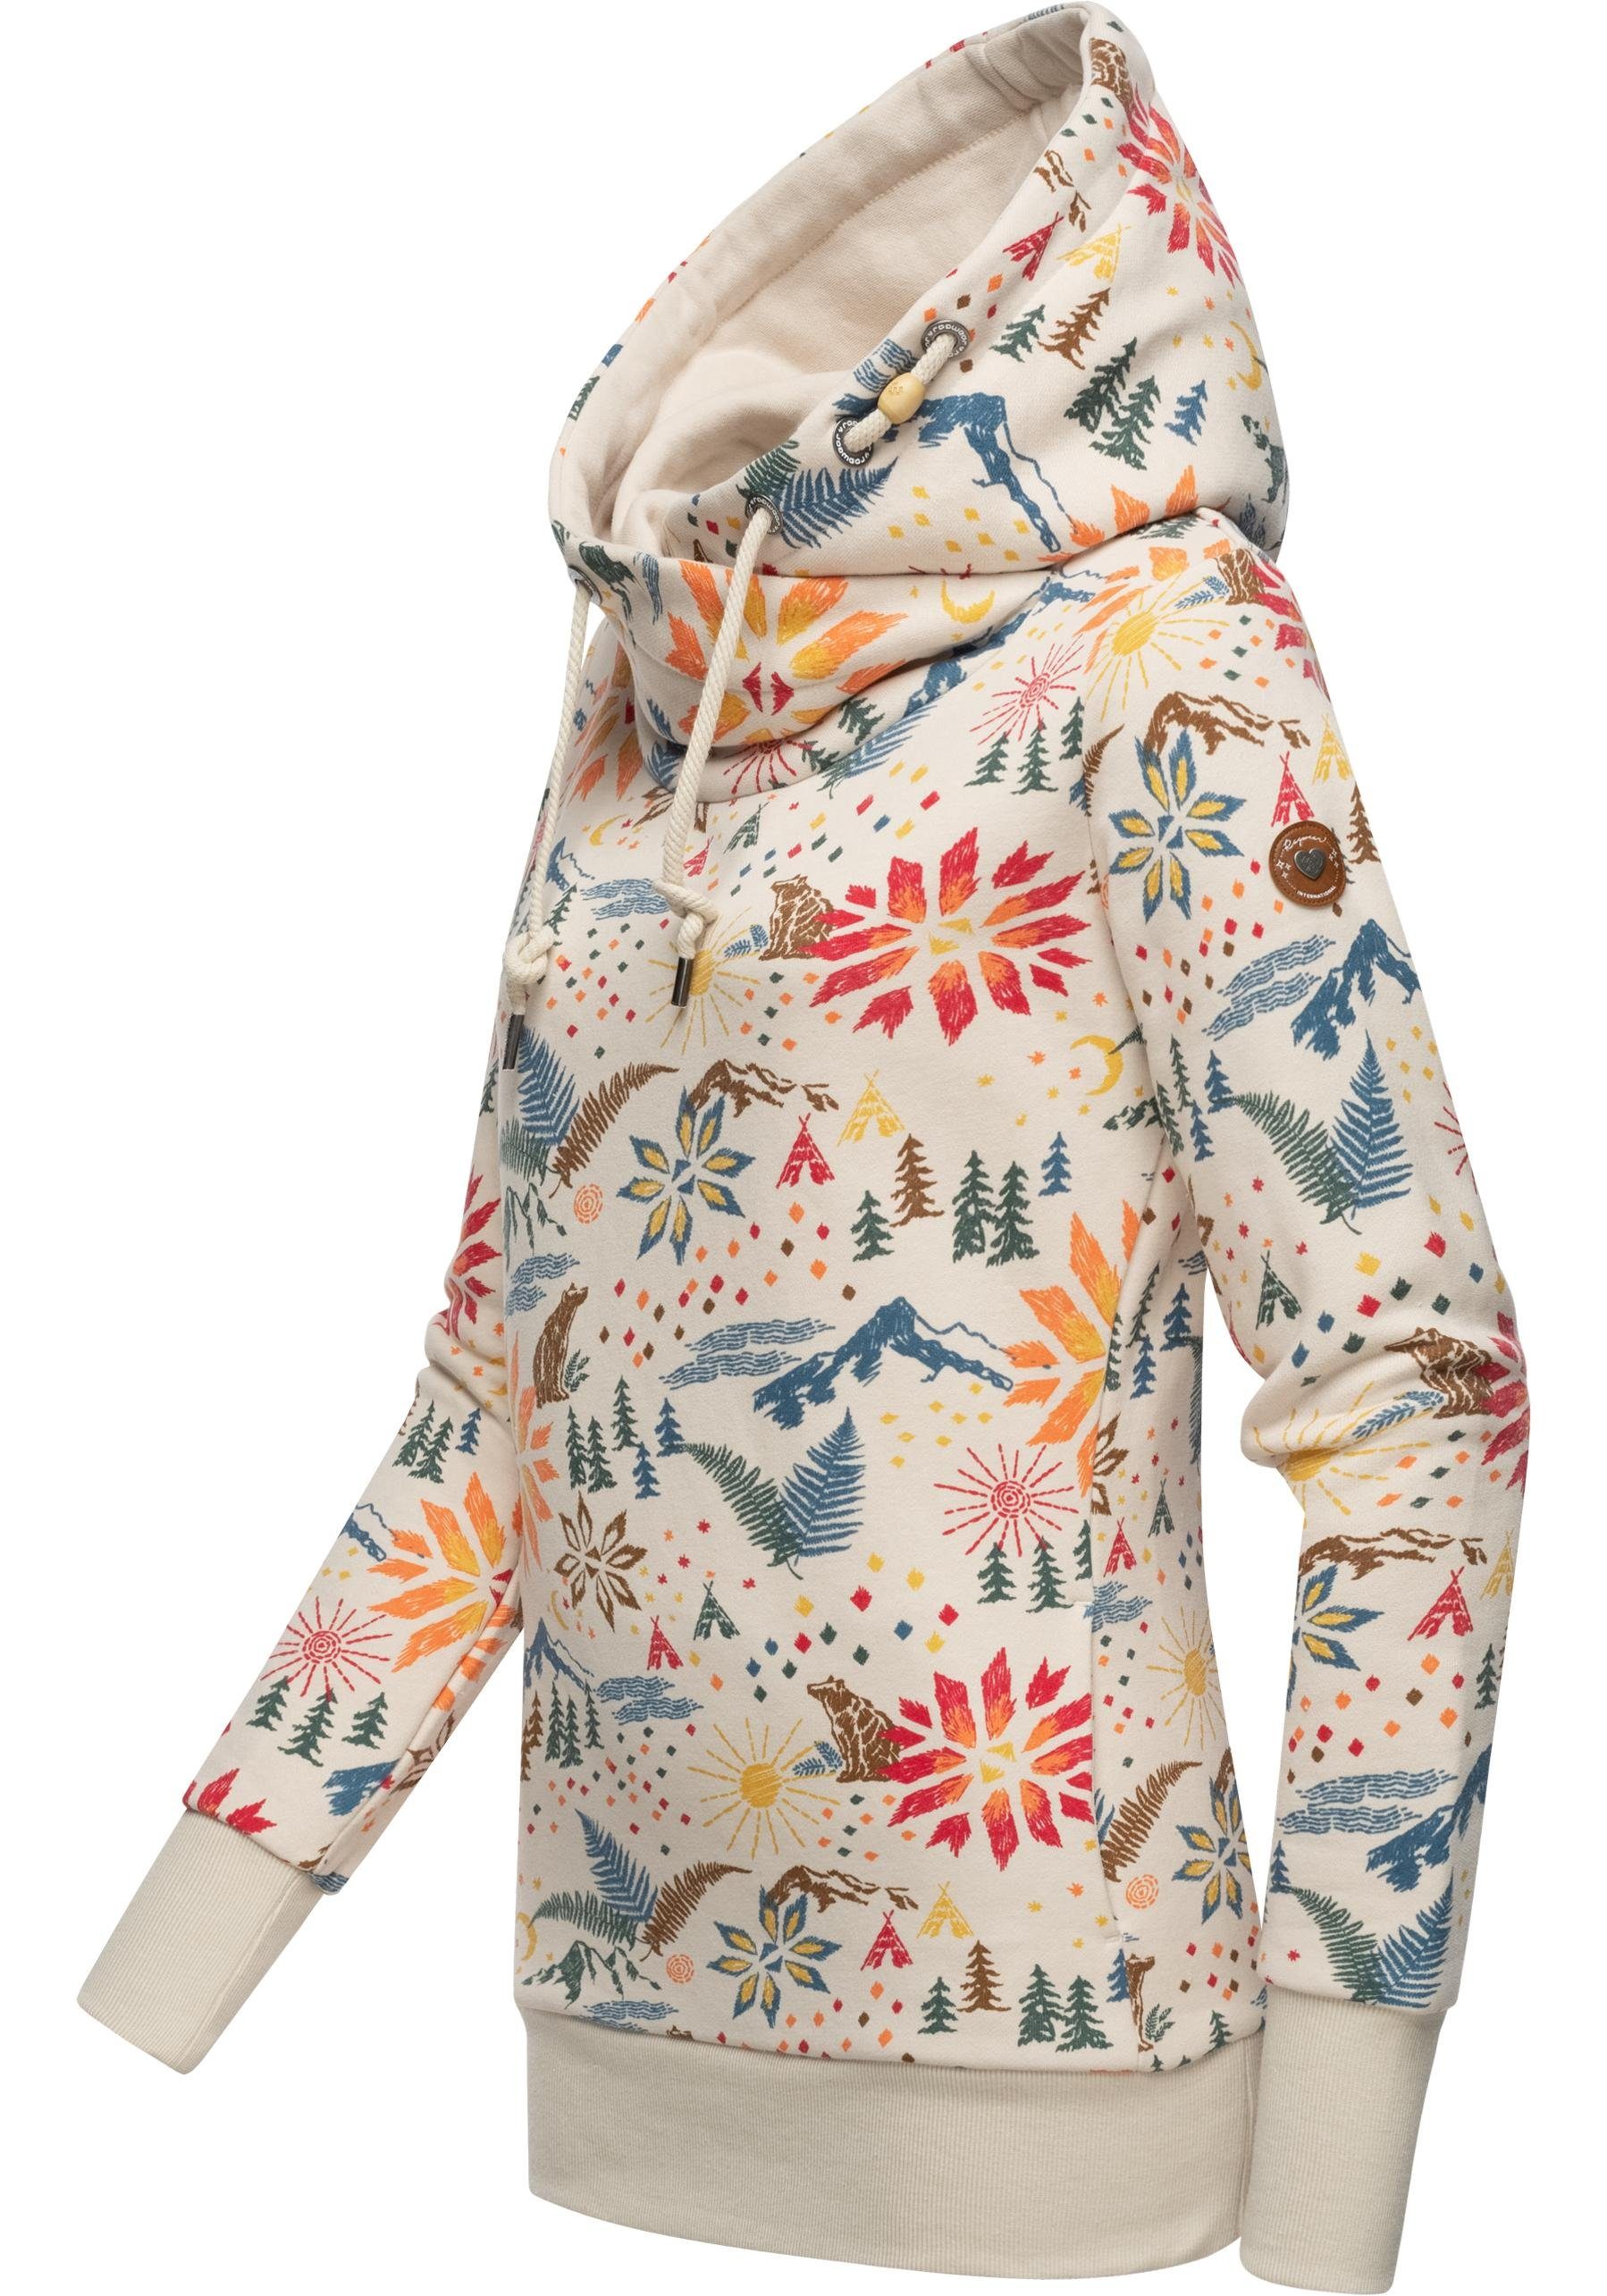 Ragwear Hoodie Gripy B Print modischer Kapuzenpullover mit hohem Kragen,  Wunderbar zu sportlich lässigen Outfits - bequem und modisch | Sweatshirts